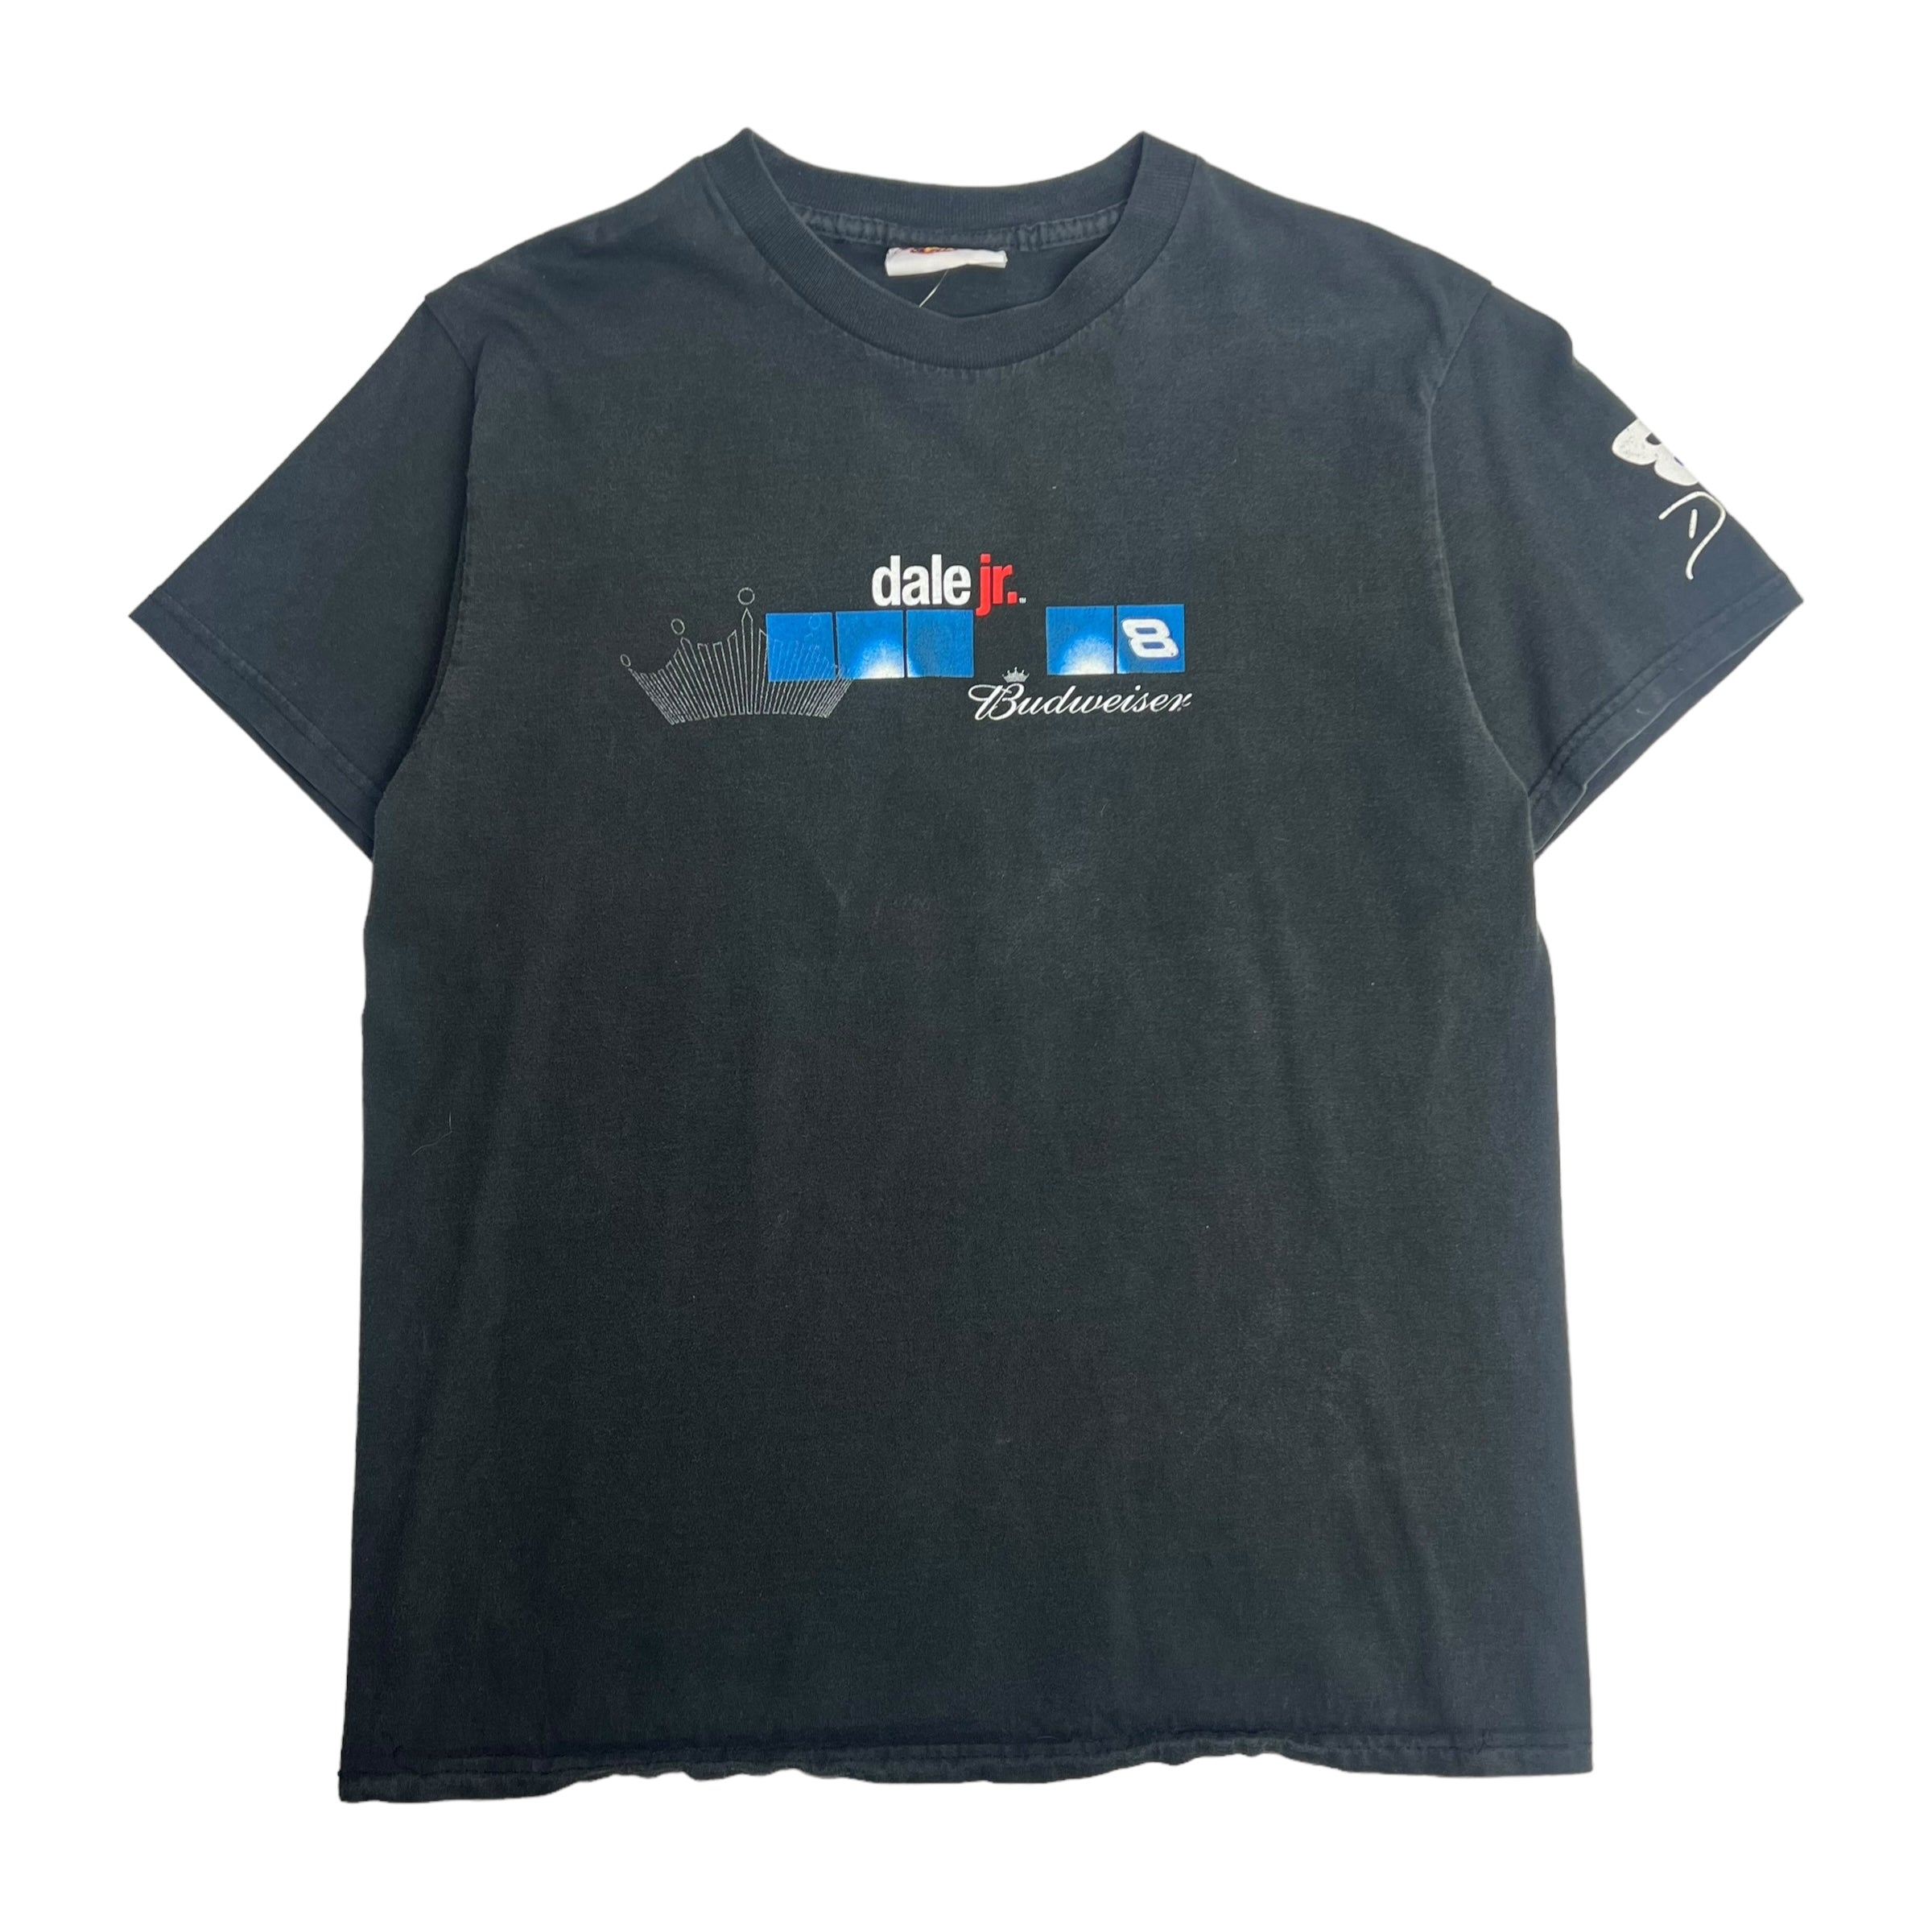 Vintage Dale Jr. NASCAR T-Shirt Black